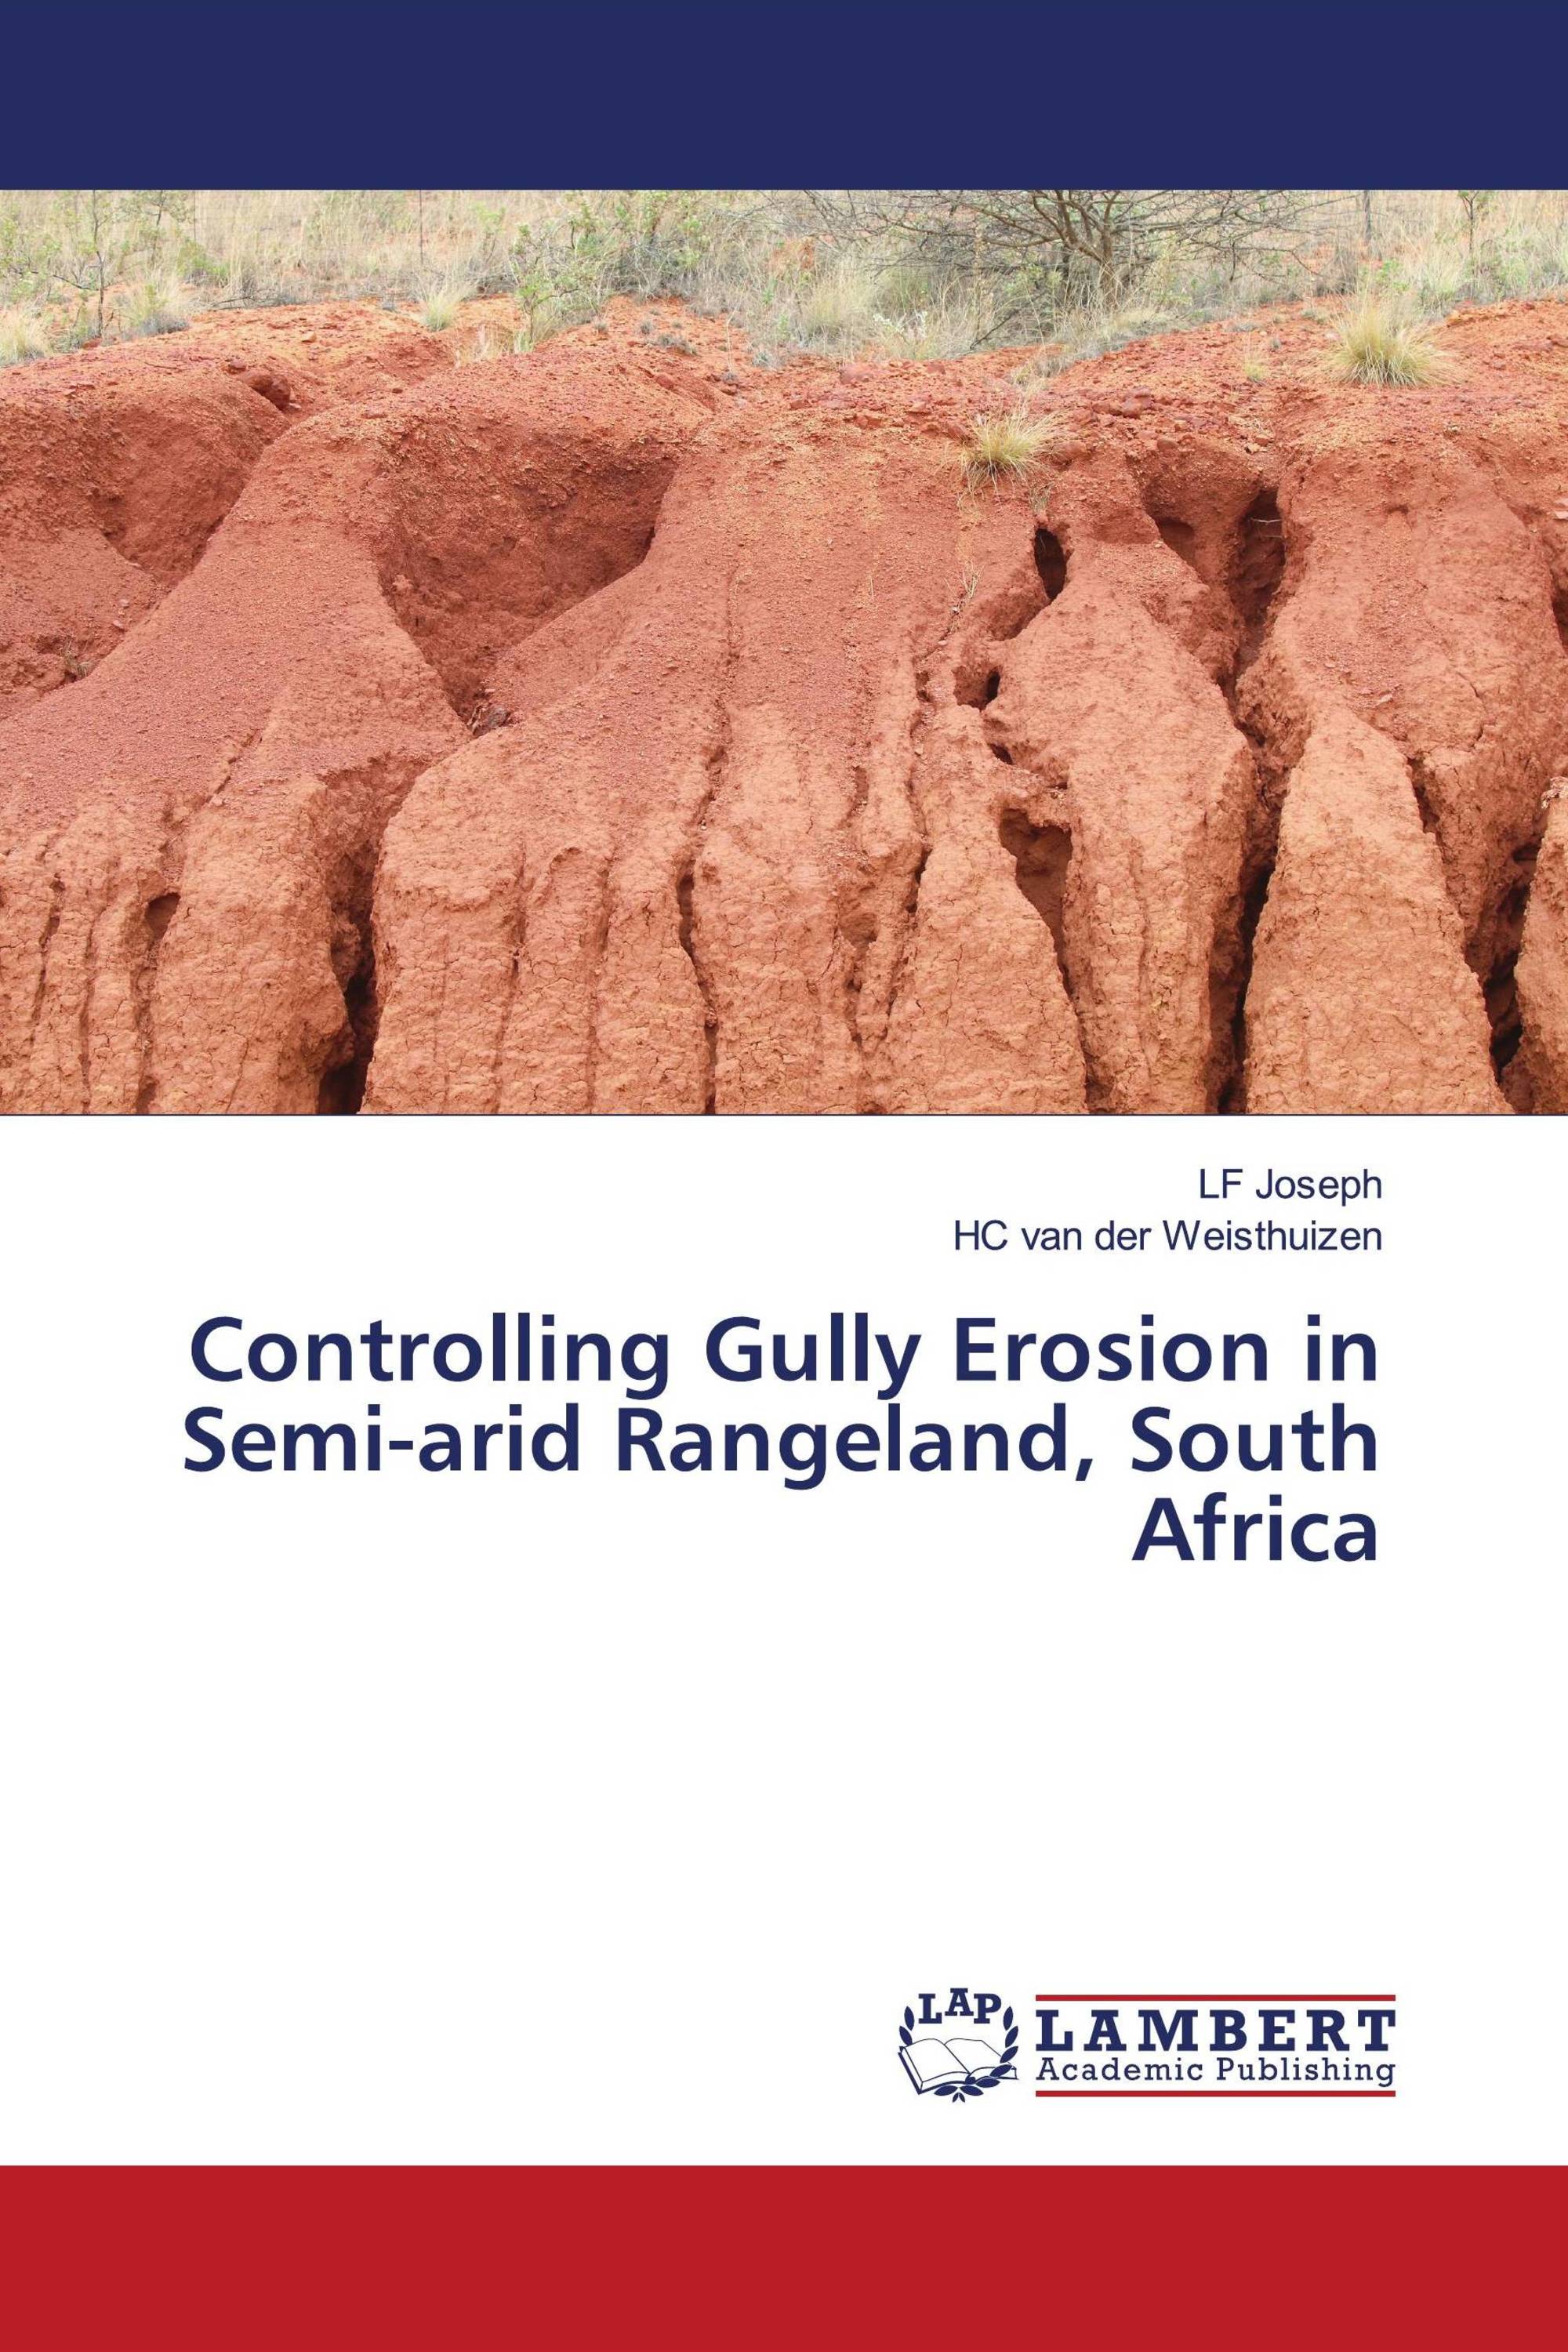 Controlling Gully Erosion in Semi-arid Rangeland, South Africa